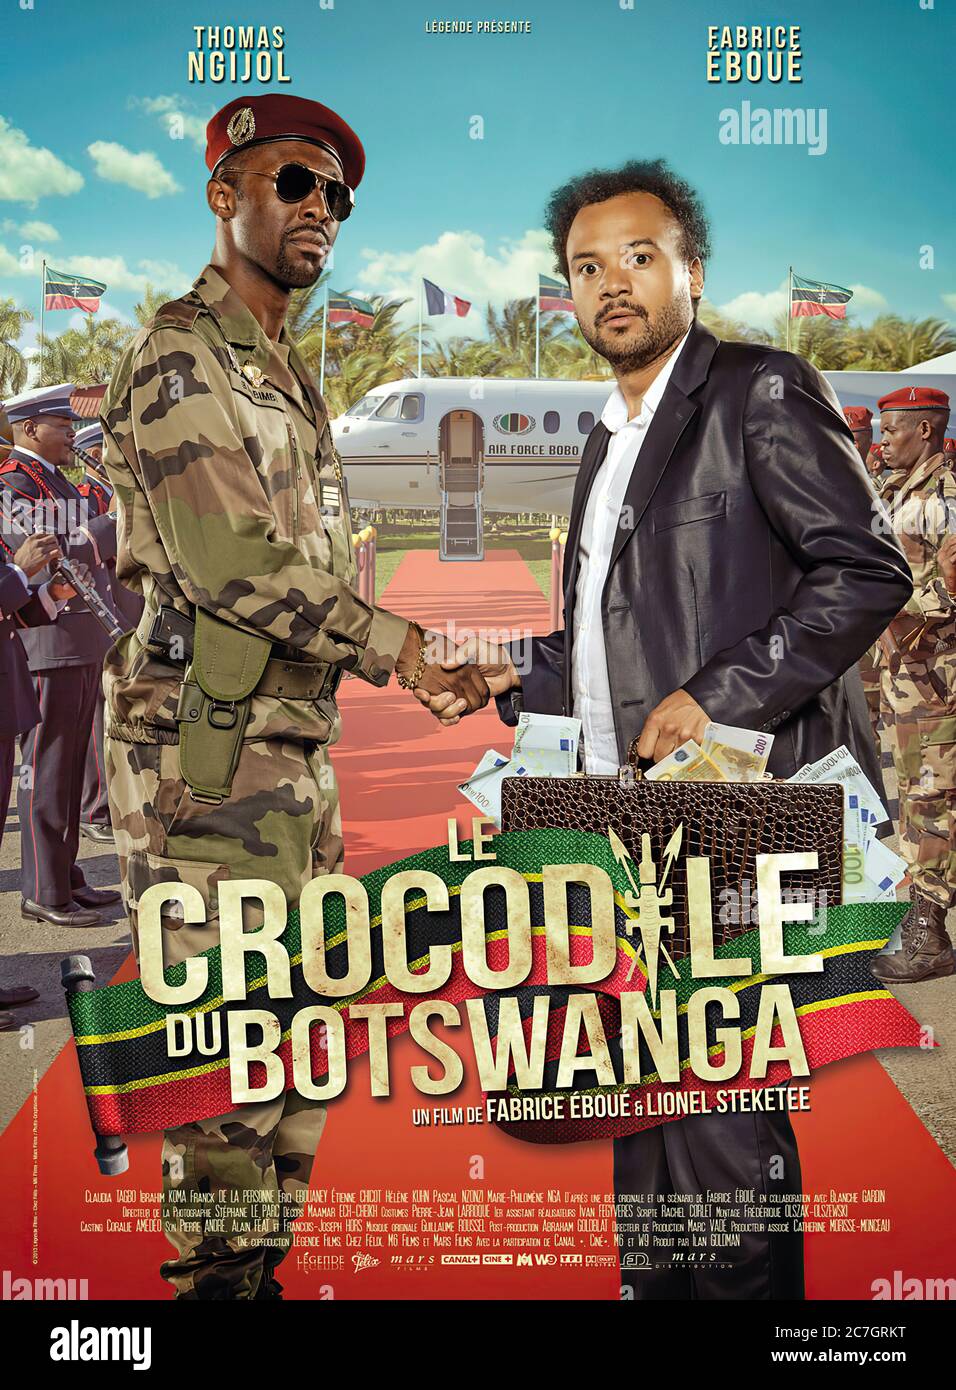 Le Crocodile Du Botswanga - Movie Poster Stock Photo